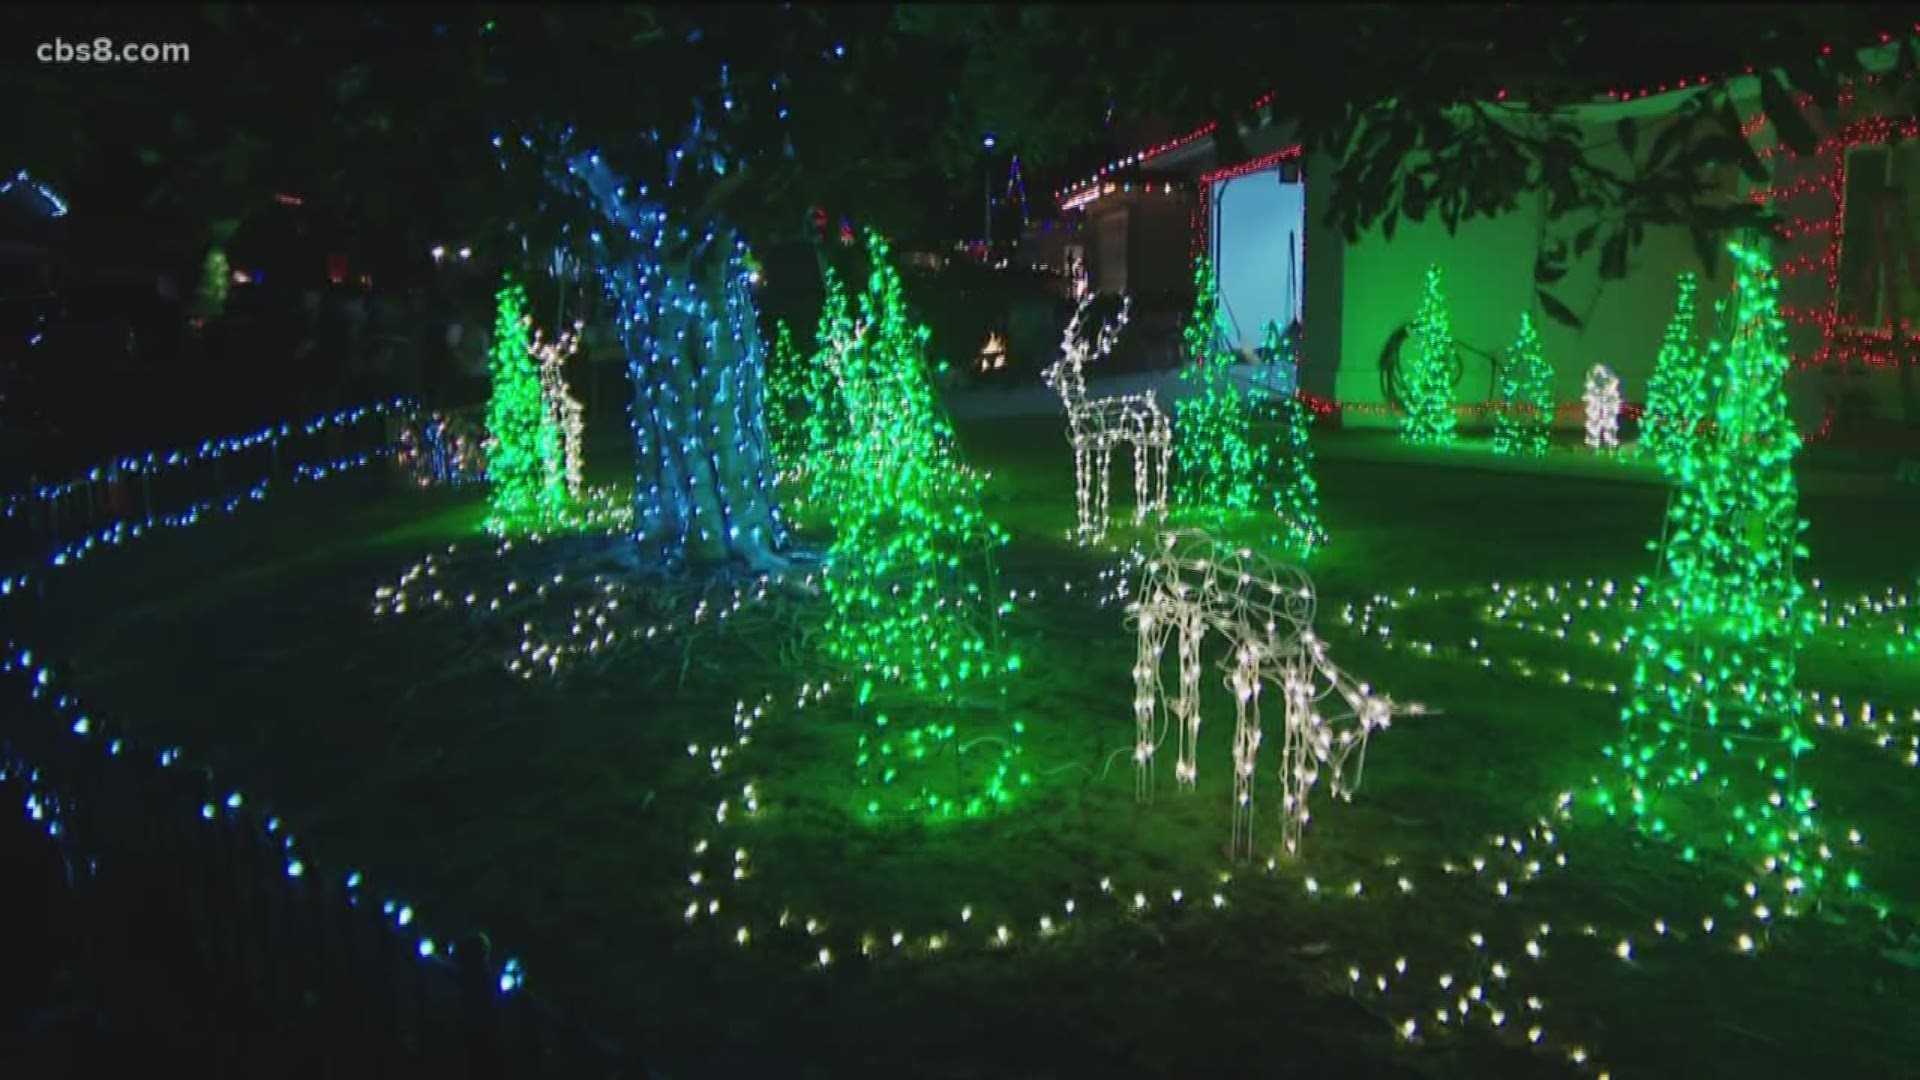 Starlight Circle lights up Santee for Christmas